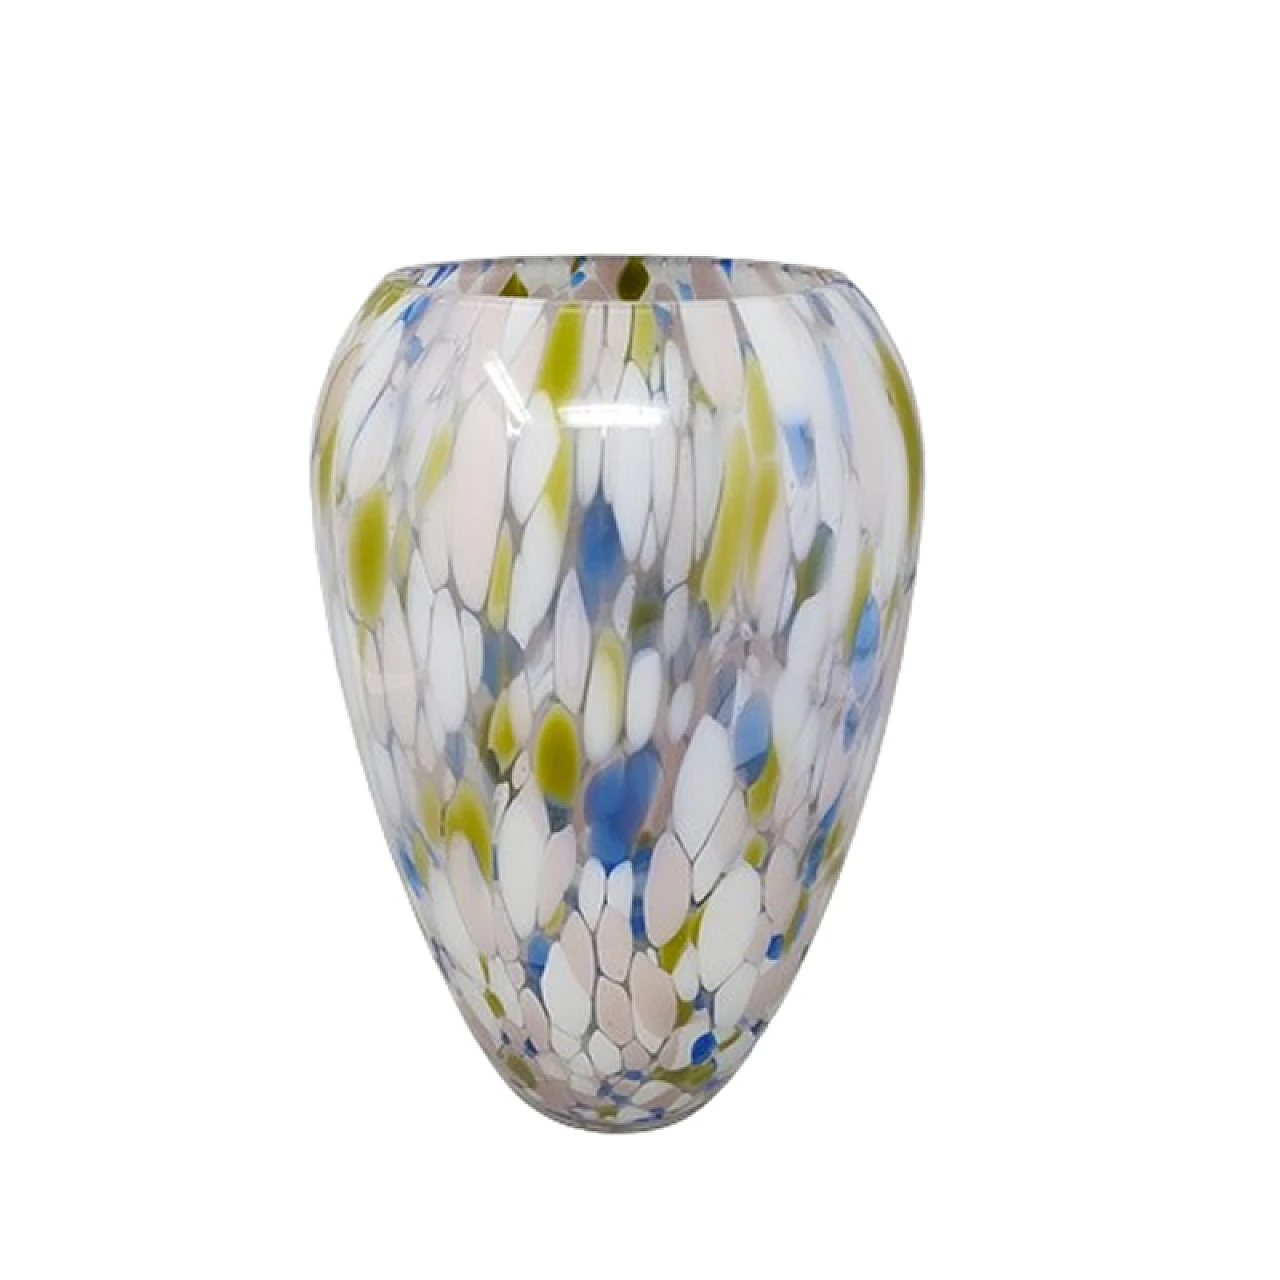 Multicolored Murano glass vase by Artelinea, 1970s 1